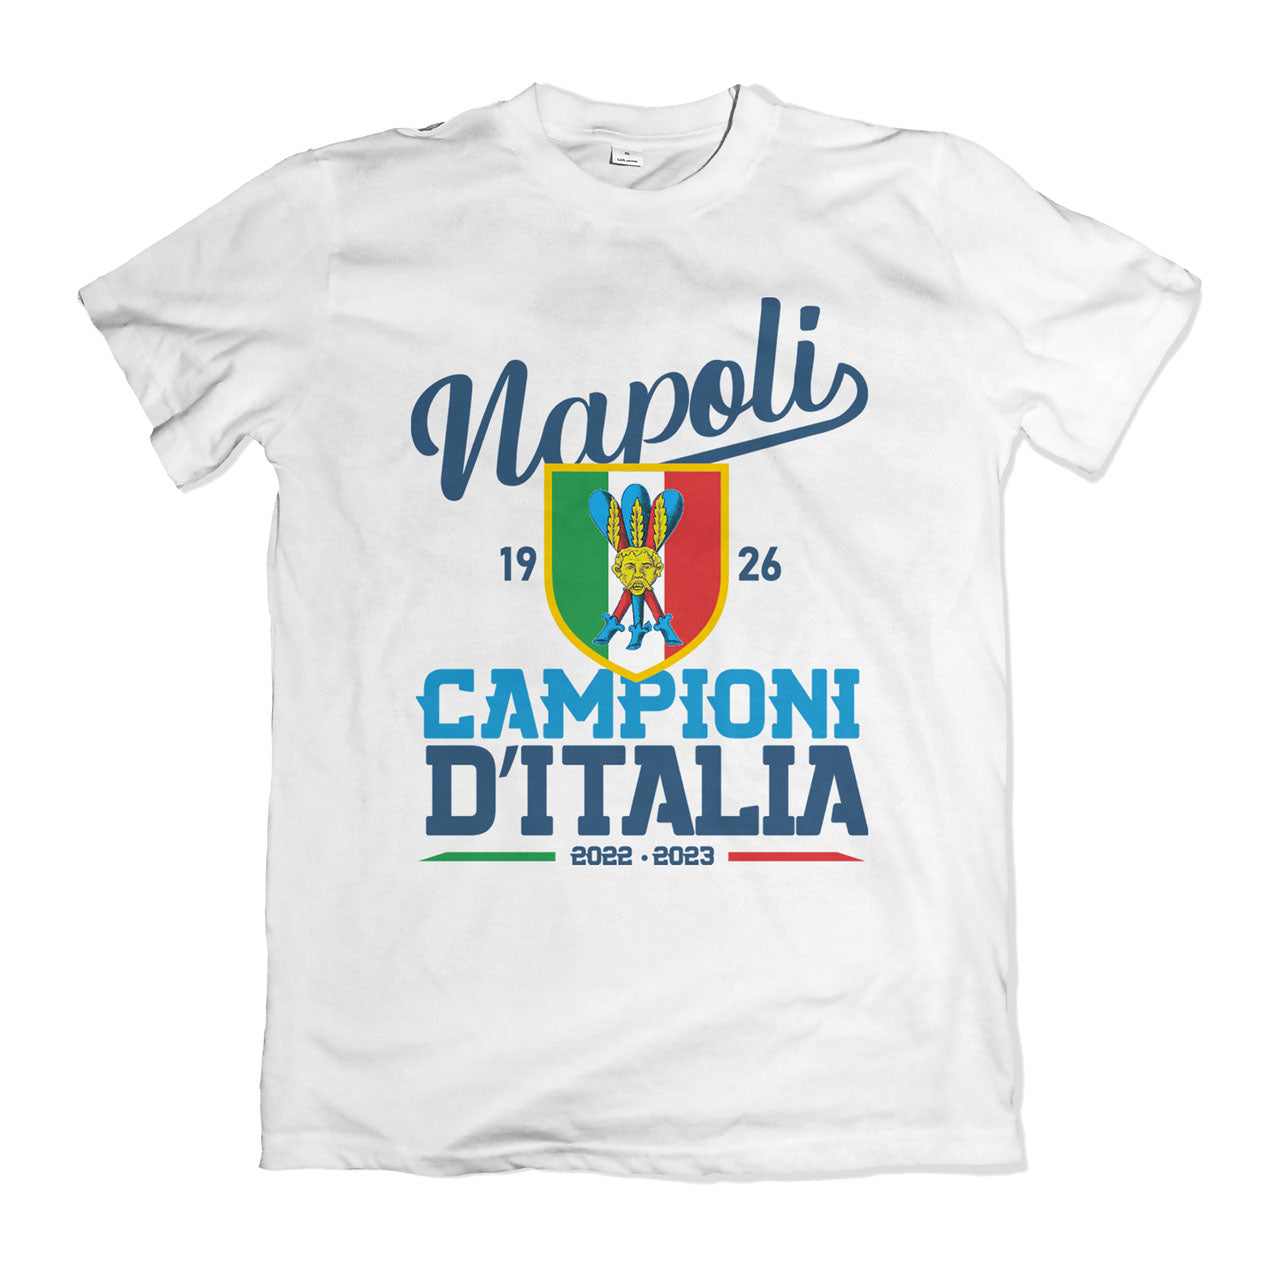 Napoli Champion of Italy T-shirt - Scudetto 2023